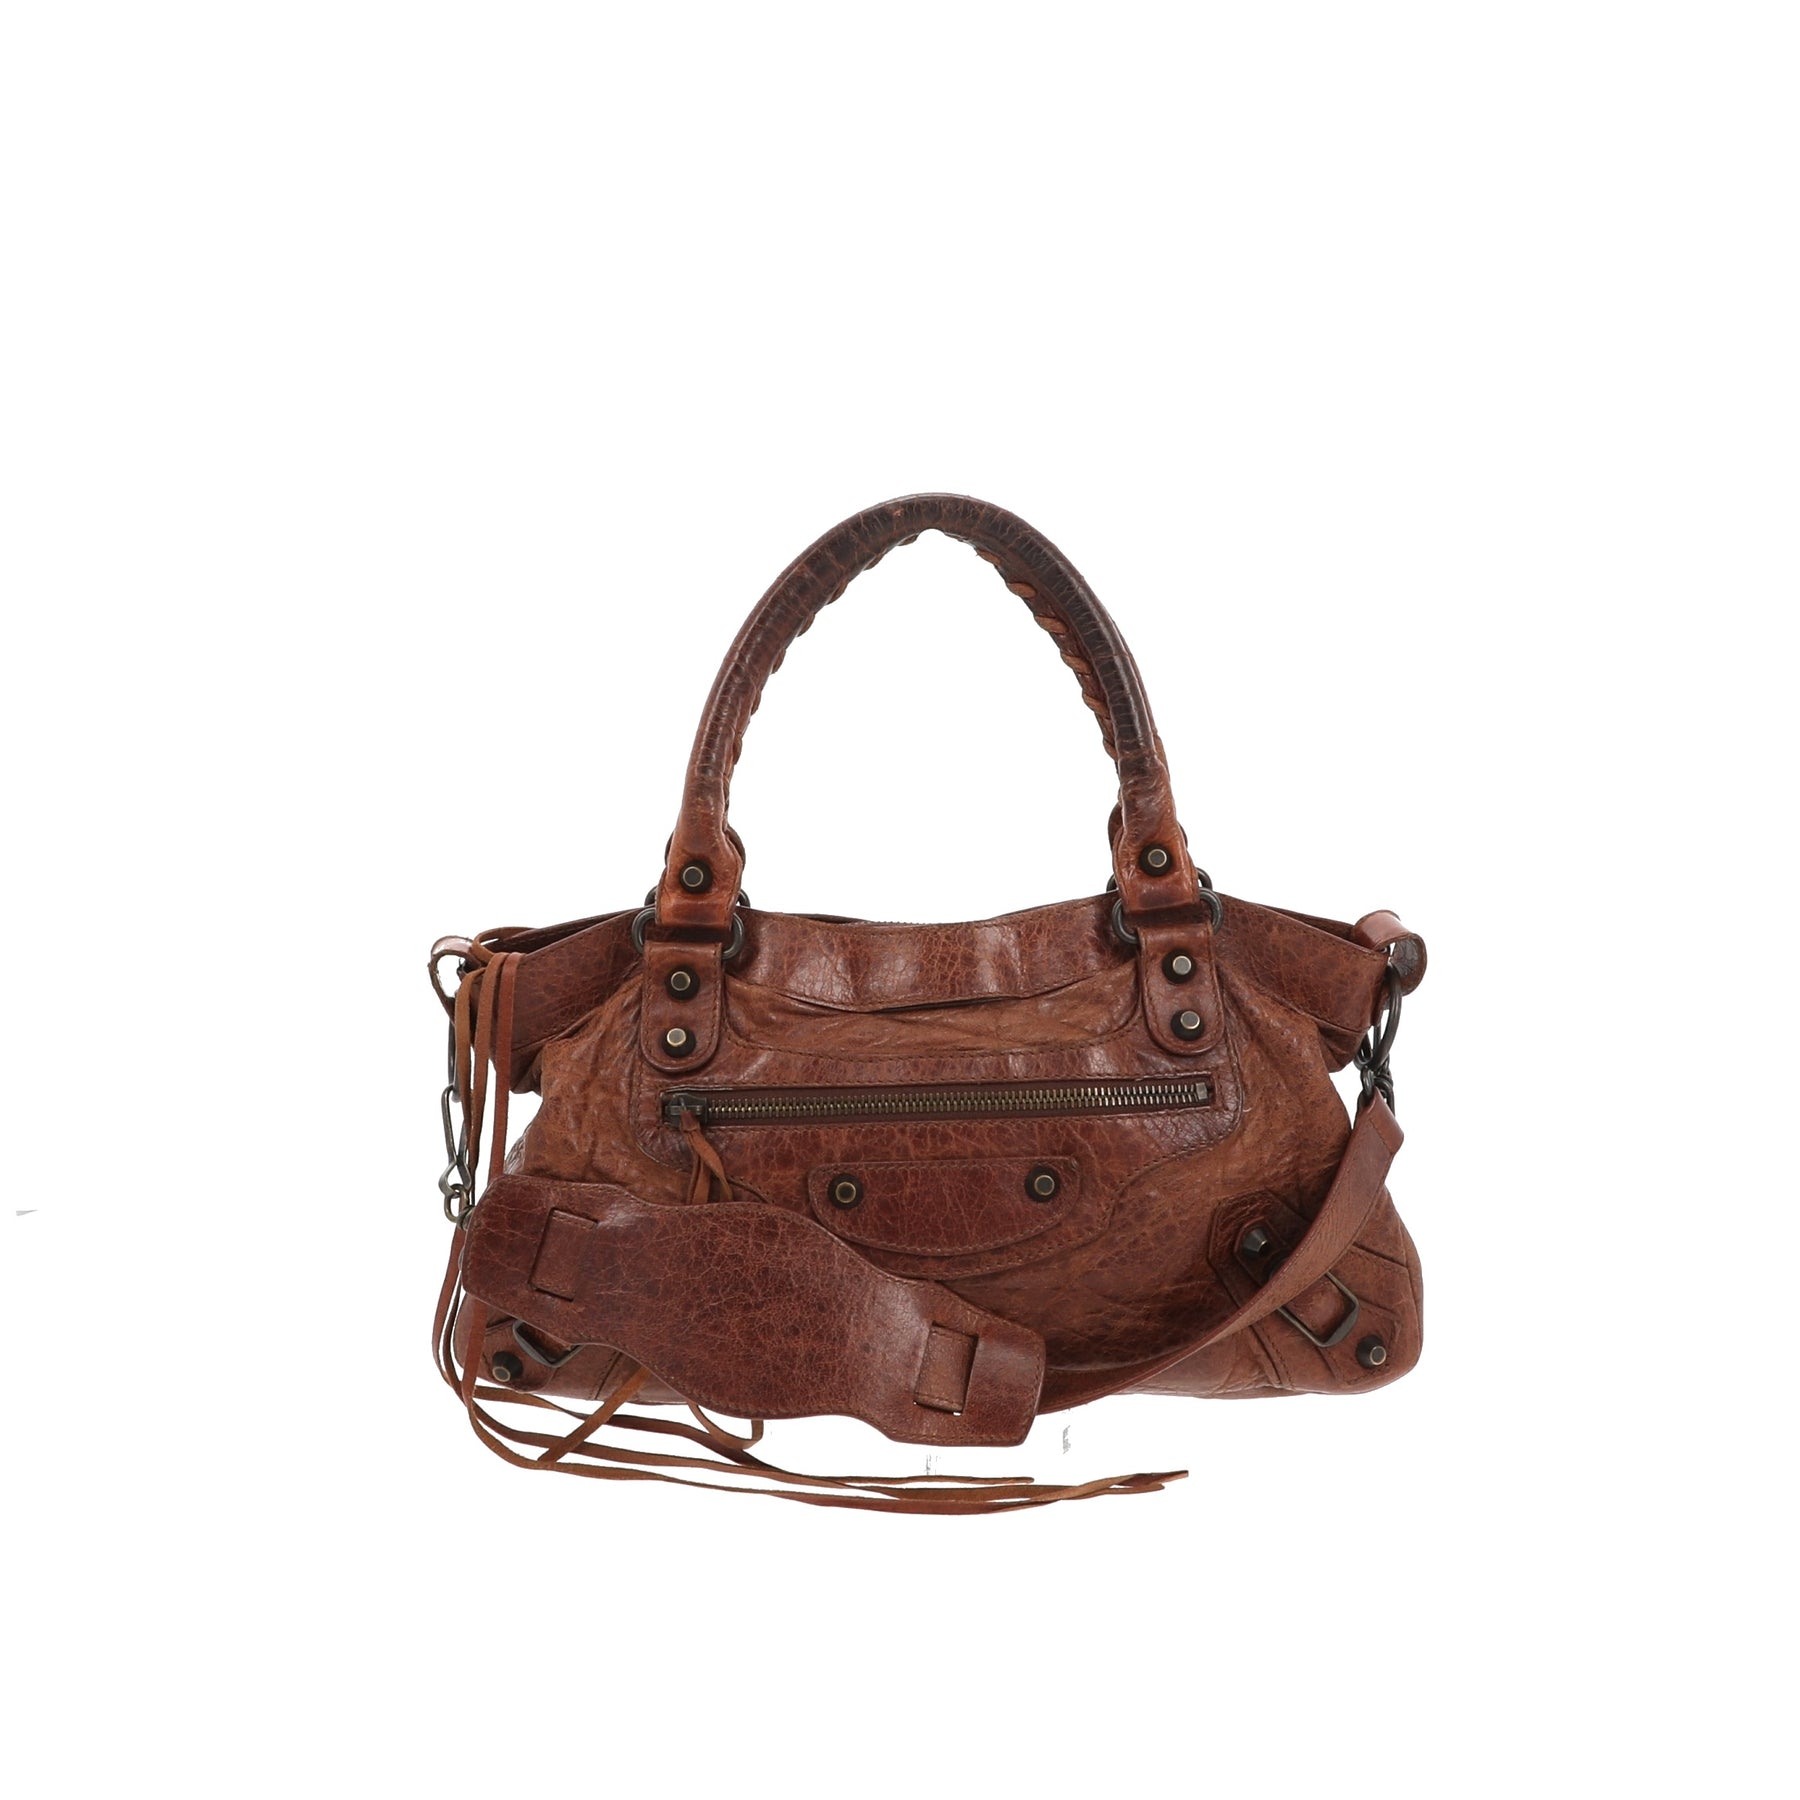 Balenciaga First Handbag in Leather Fancy Lux